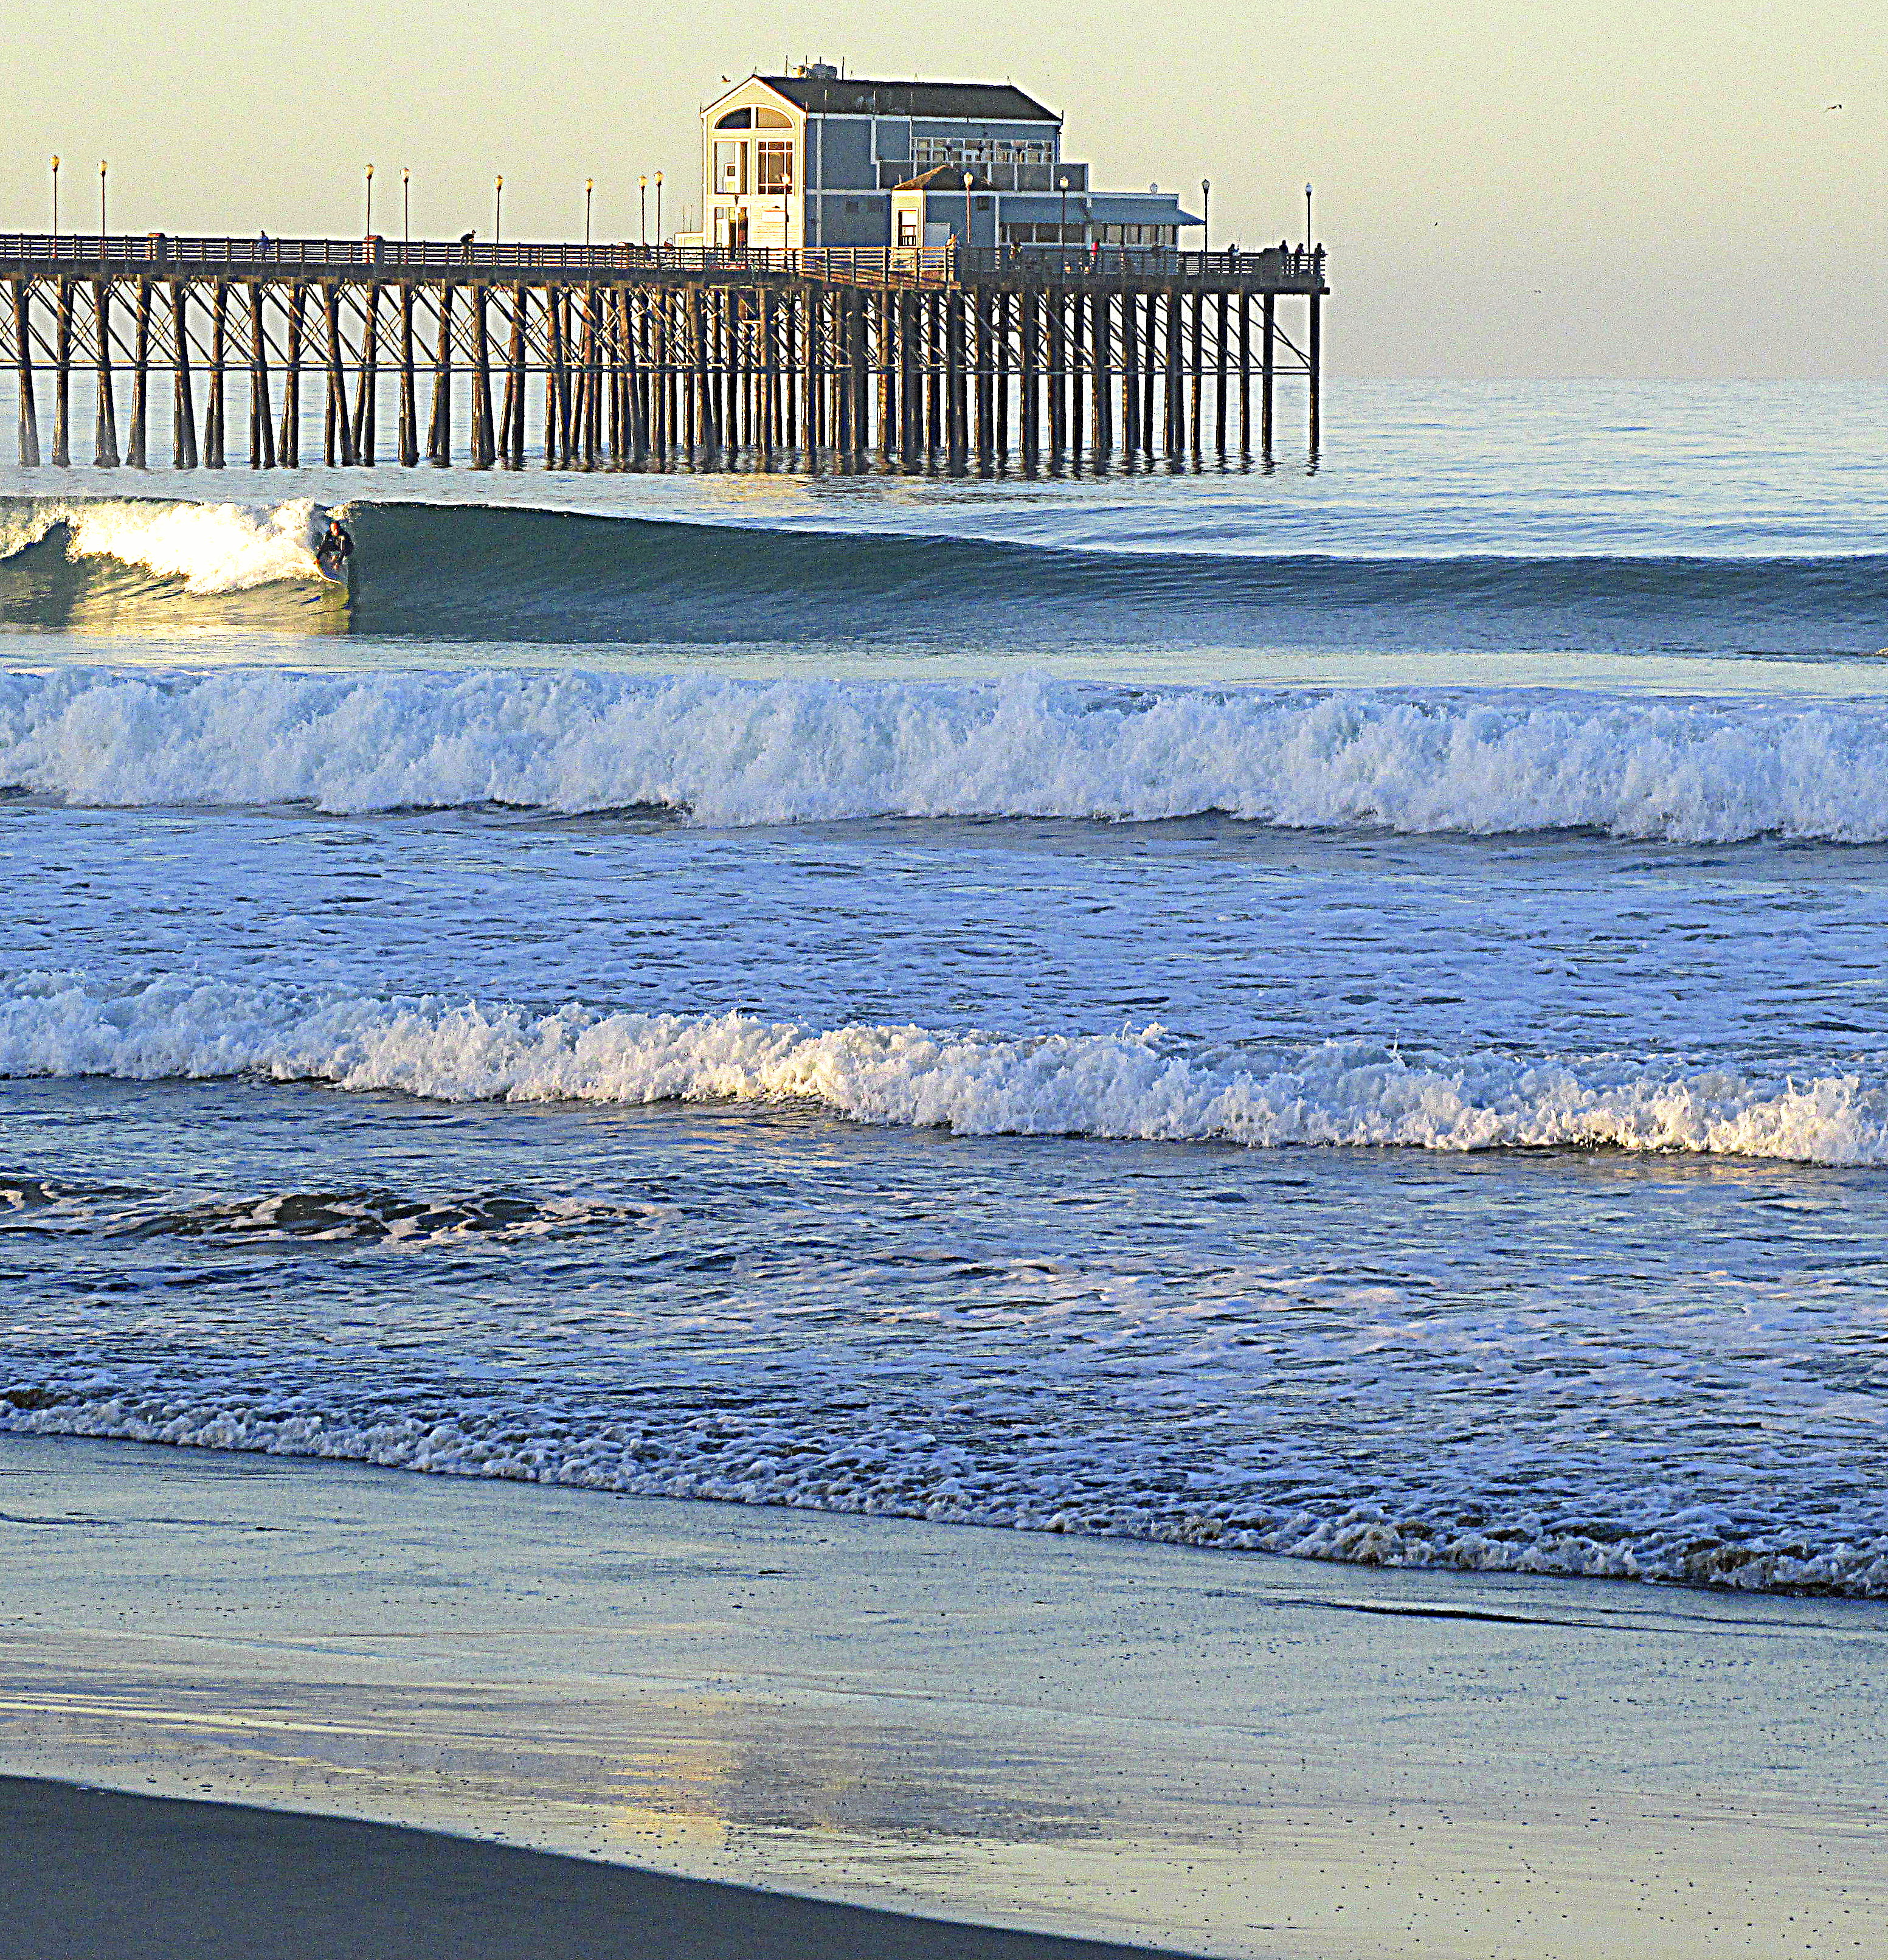 File:Oceanside, California 03.jpg - Wikimedia Commons